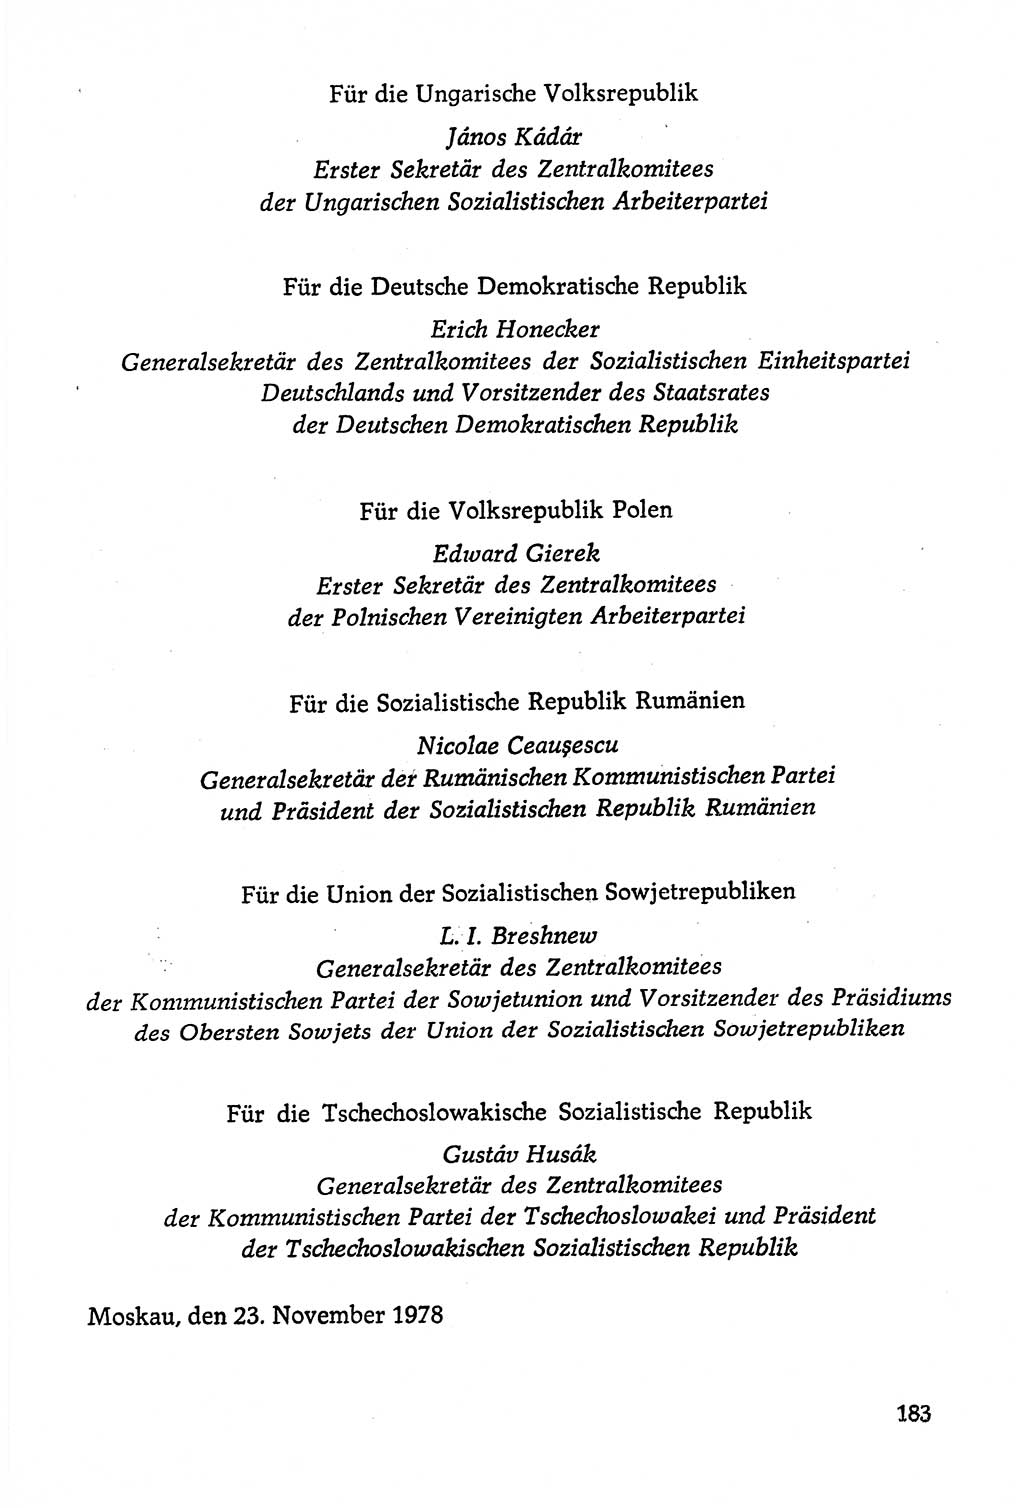 Dokumente der Sozialistischen Einheitspartei Deutschlands (SED) [Deutsche Demokratische Republik (DDR)] 1978-1979, Seite 183 (Dok. SED DDR 1978-1979, S. 183)